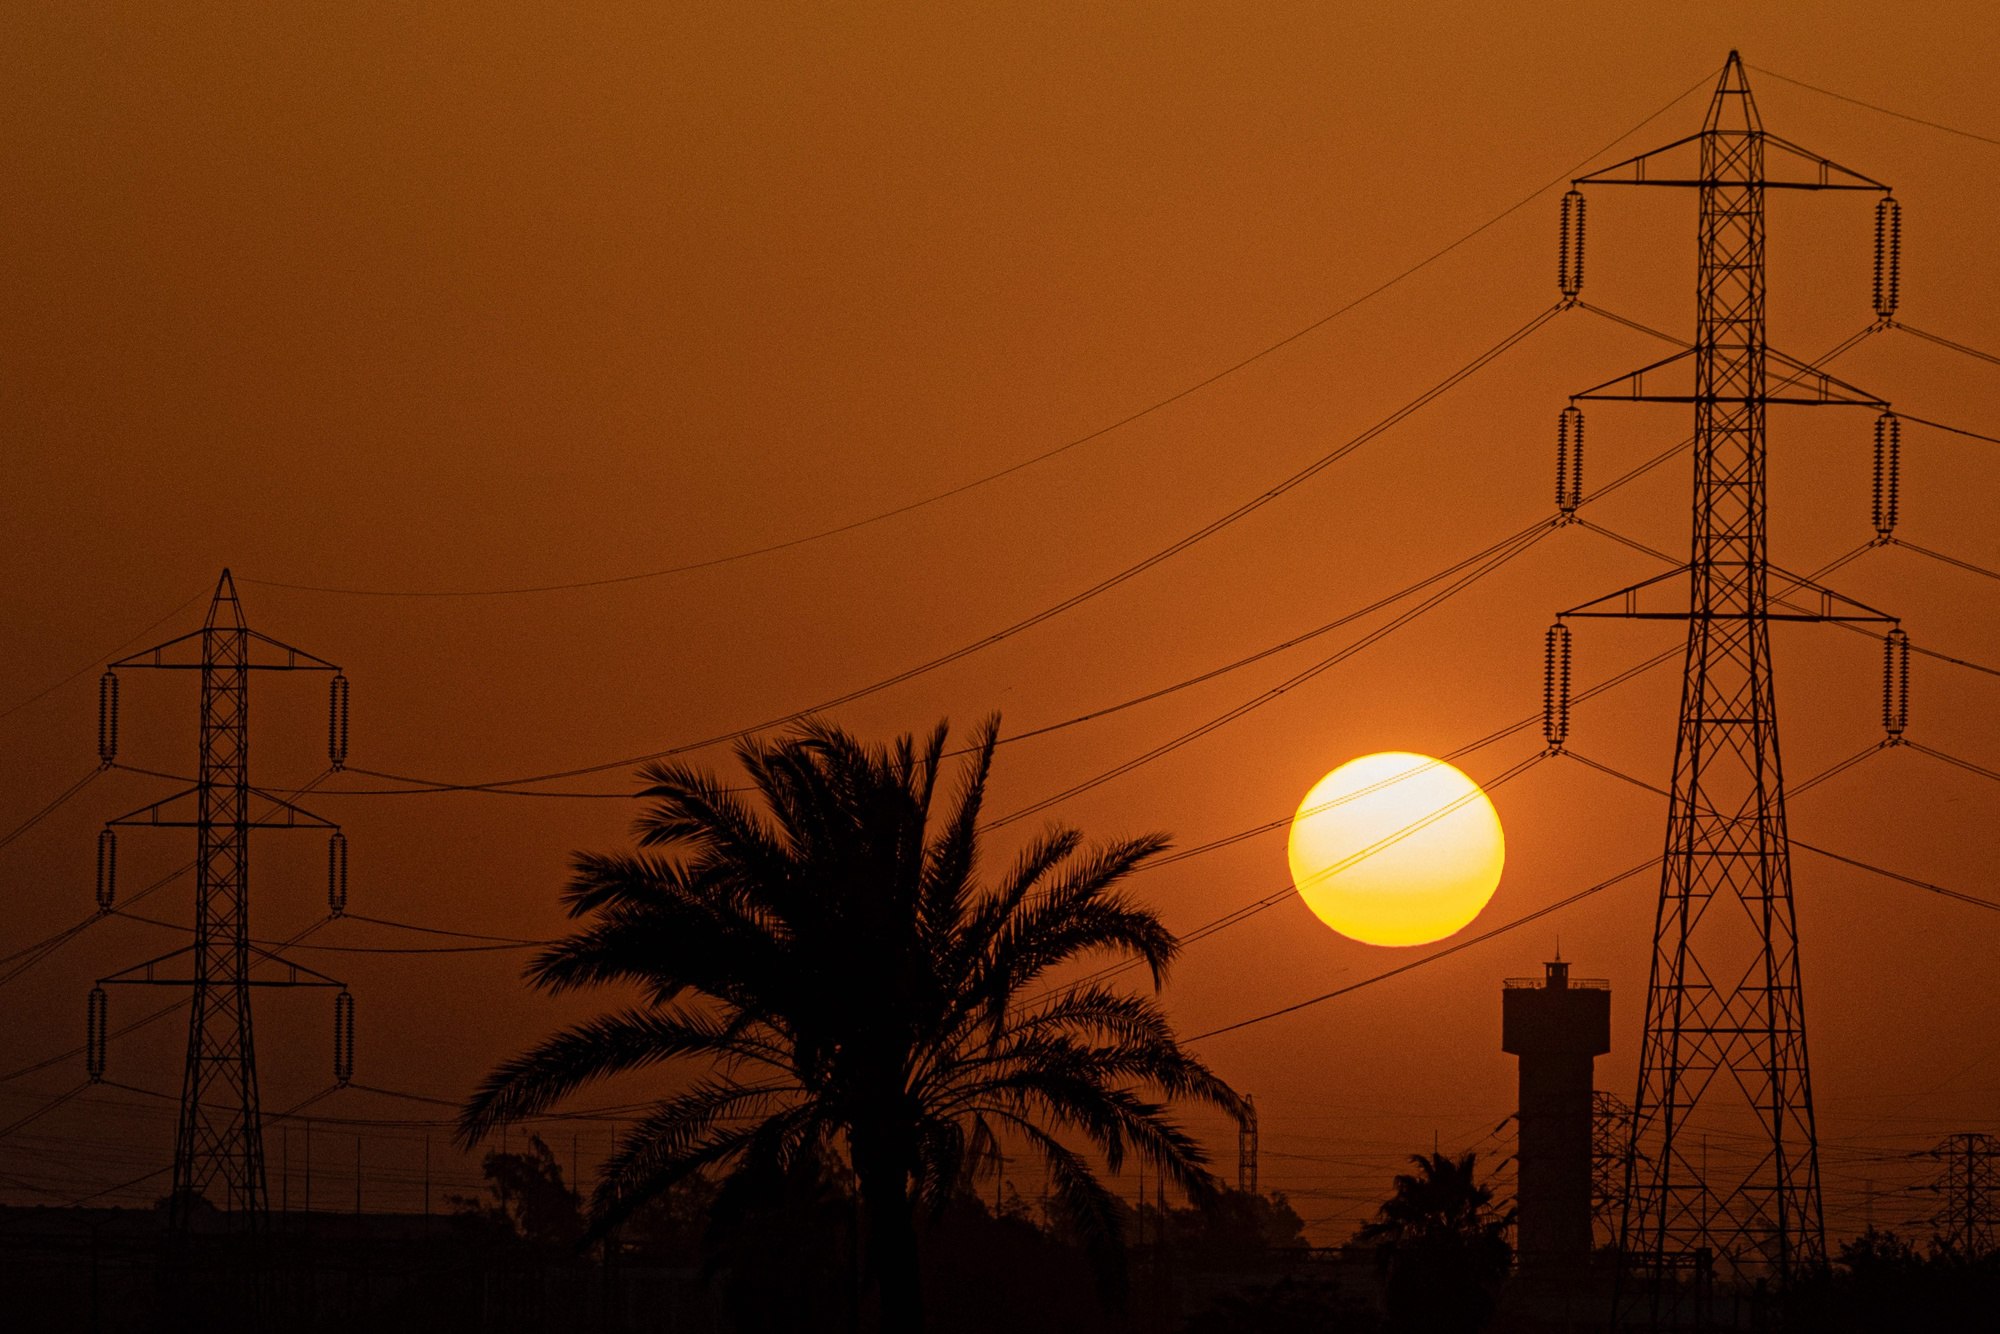 ⚡️ Єгипет обмежує споживання електроенергії, щоб більше експортувати природний газ